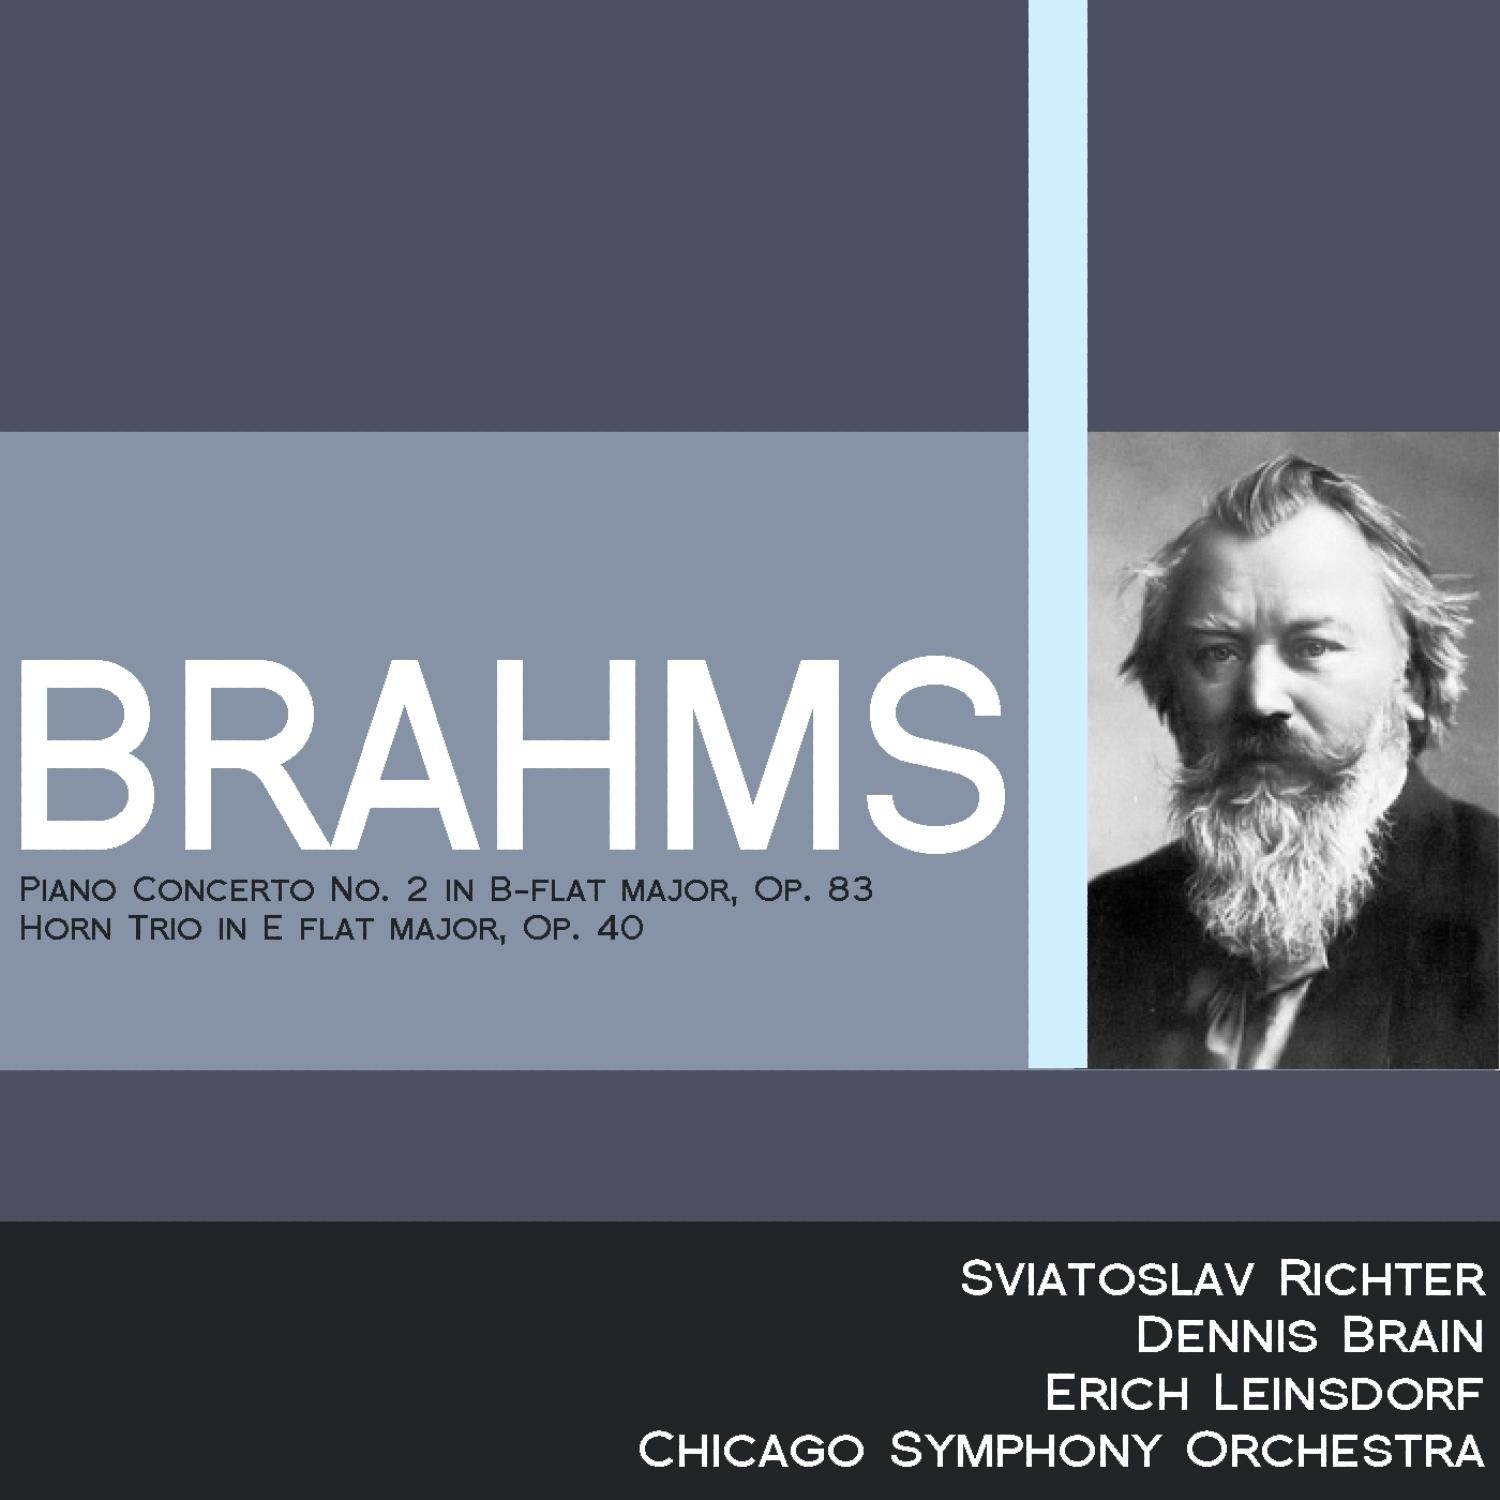 Brahms: Piano Concerto No. 2 in B-Flat Major, Op. 83 - Horn Trio in E-Flat Major, Op. 40